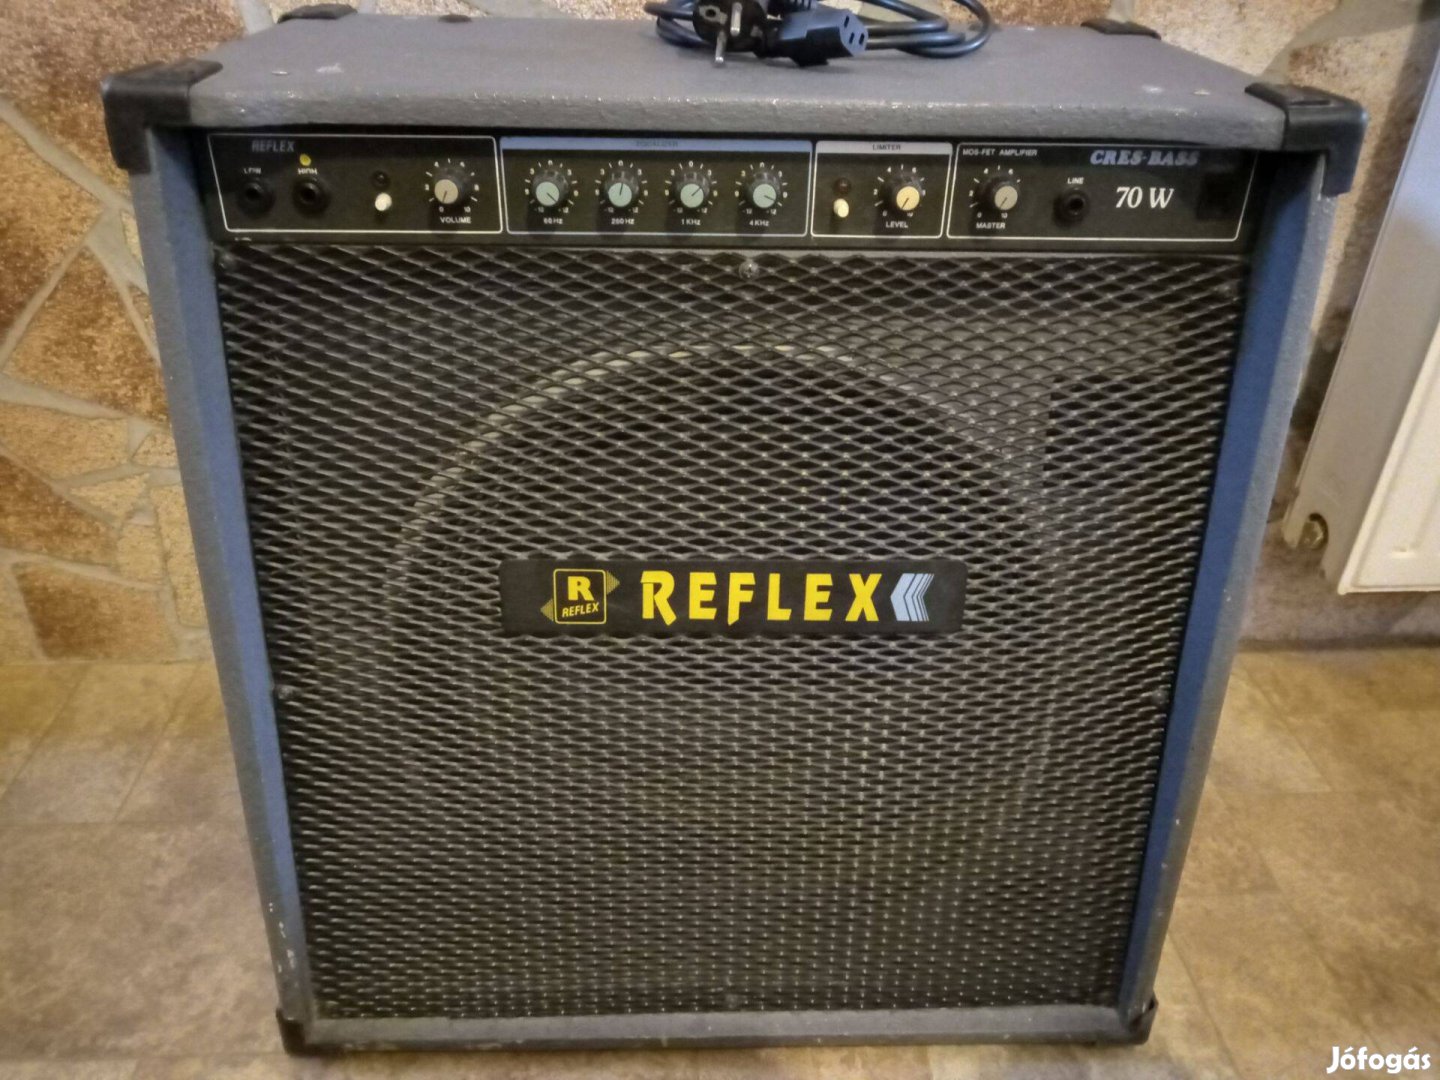 Reflex cres bass basszusgitár-billentyű combo